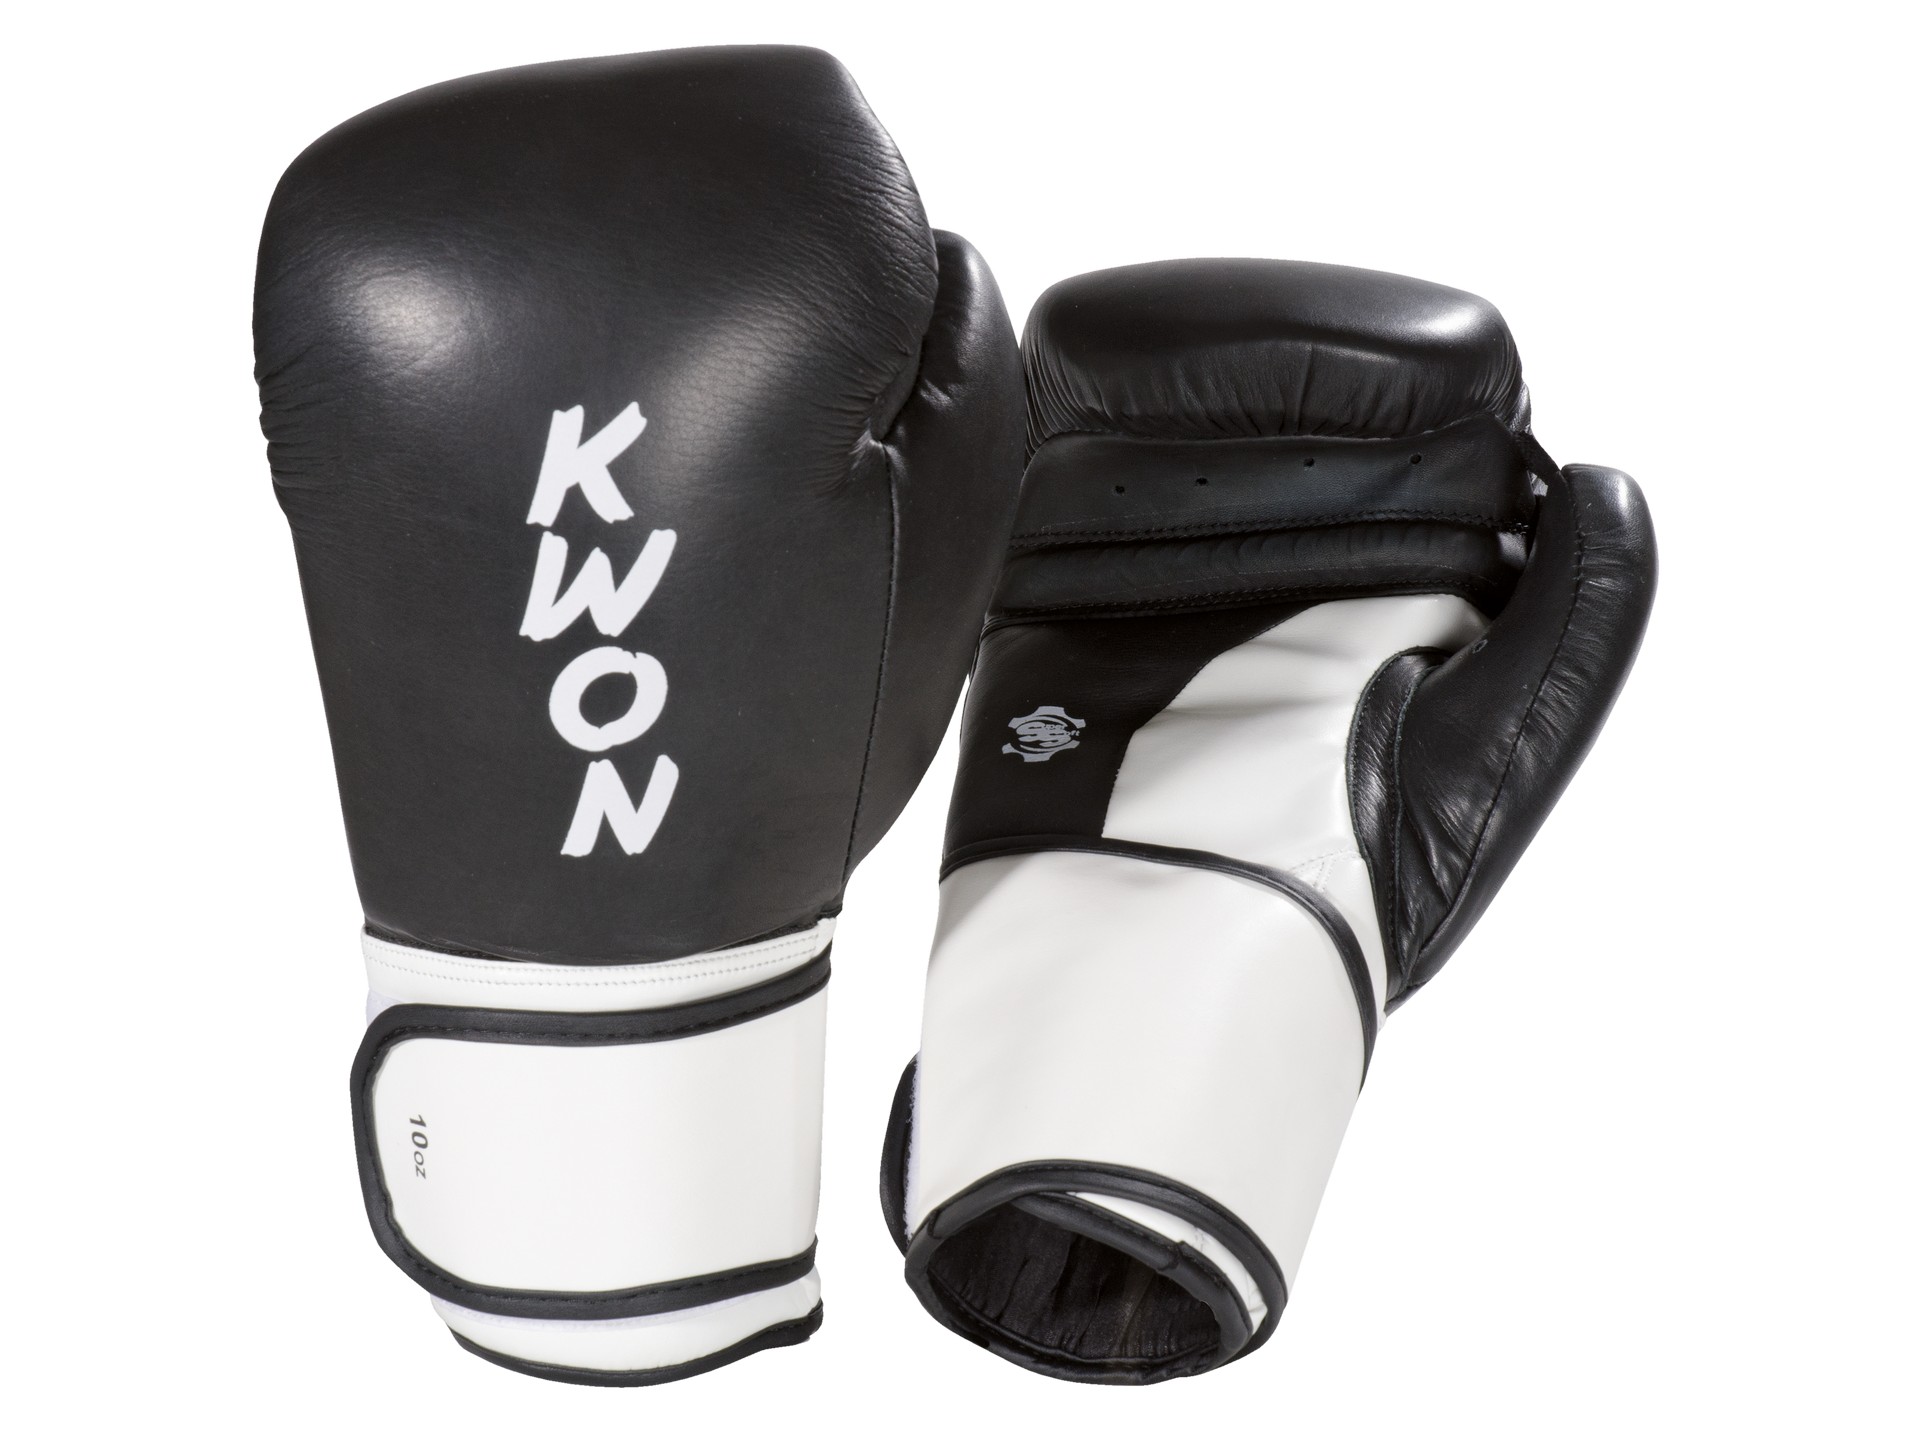 KWON Boxhandschuhe Super Champ | Wettkampfhandschuhe Kickboxen | Thai Boxen  - WKU anerkannt